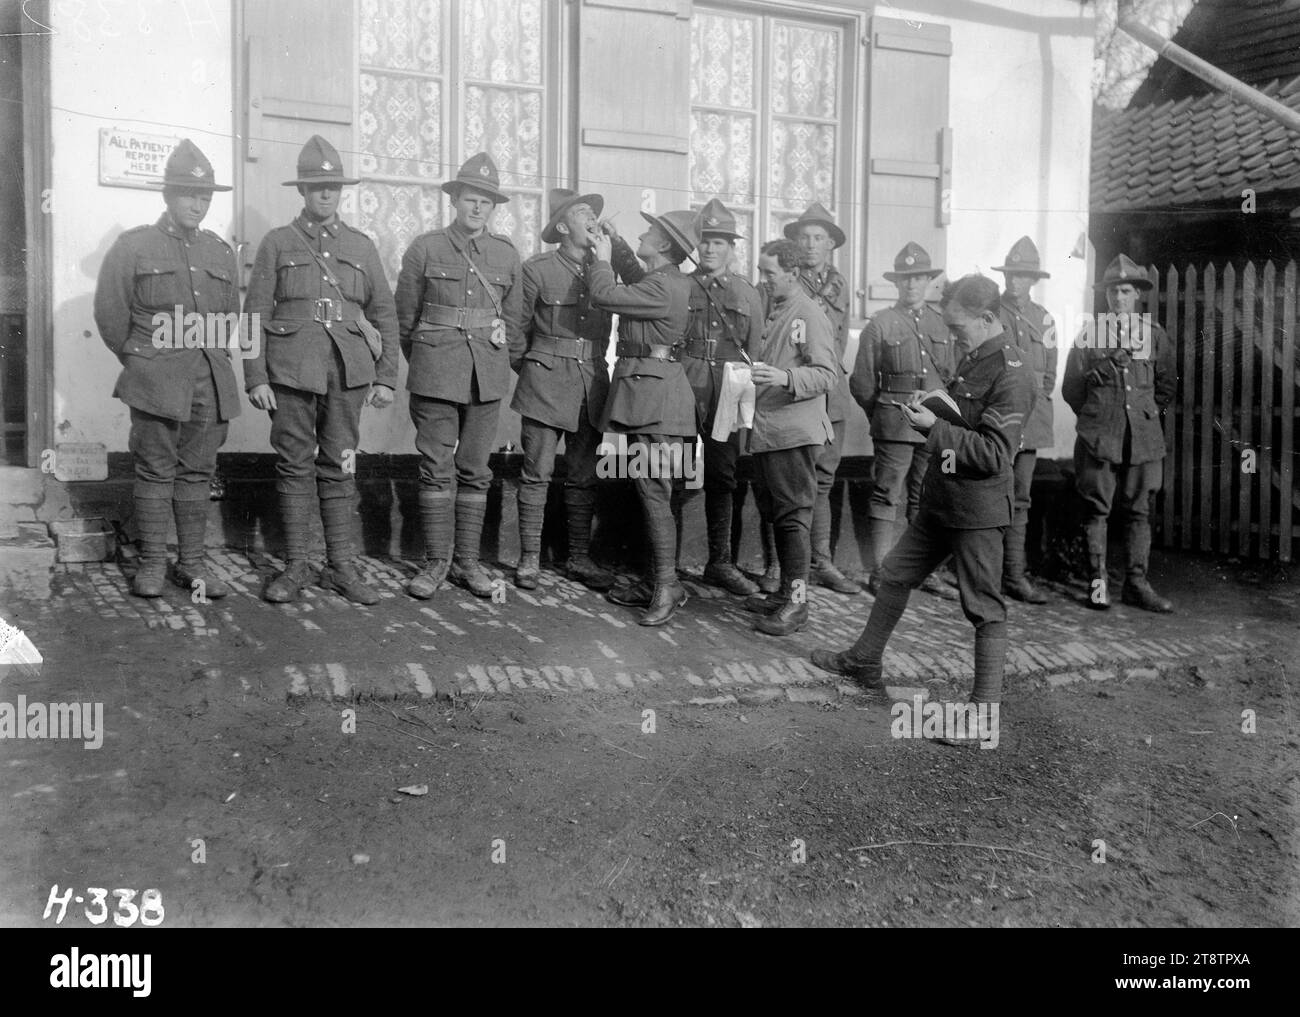 Ispezionando i denti dei soldati durante la prima guerra mondiale, i soldati vengono sottoposti a un'ispezione dei denti fuori dall'ospedale dentistico di Nielles, in Francia. Fotografia scattata nel novembre 1917 Foto Stock